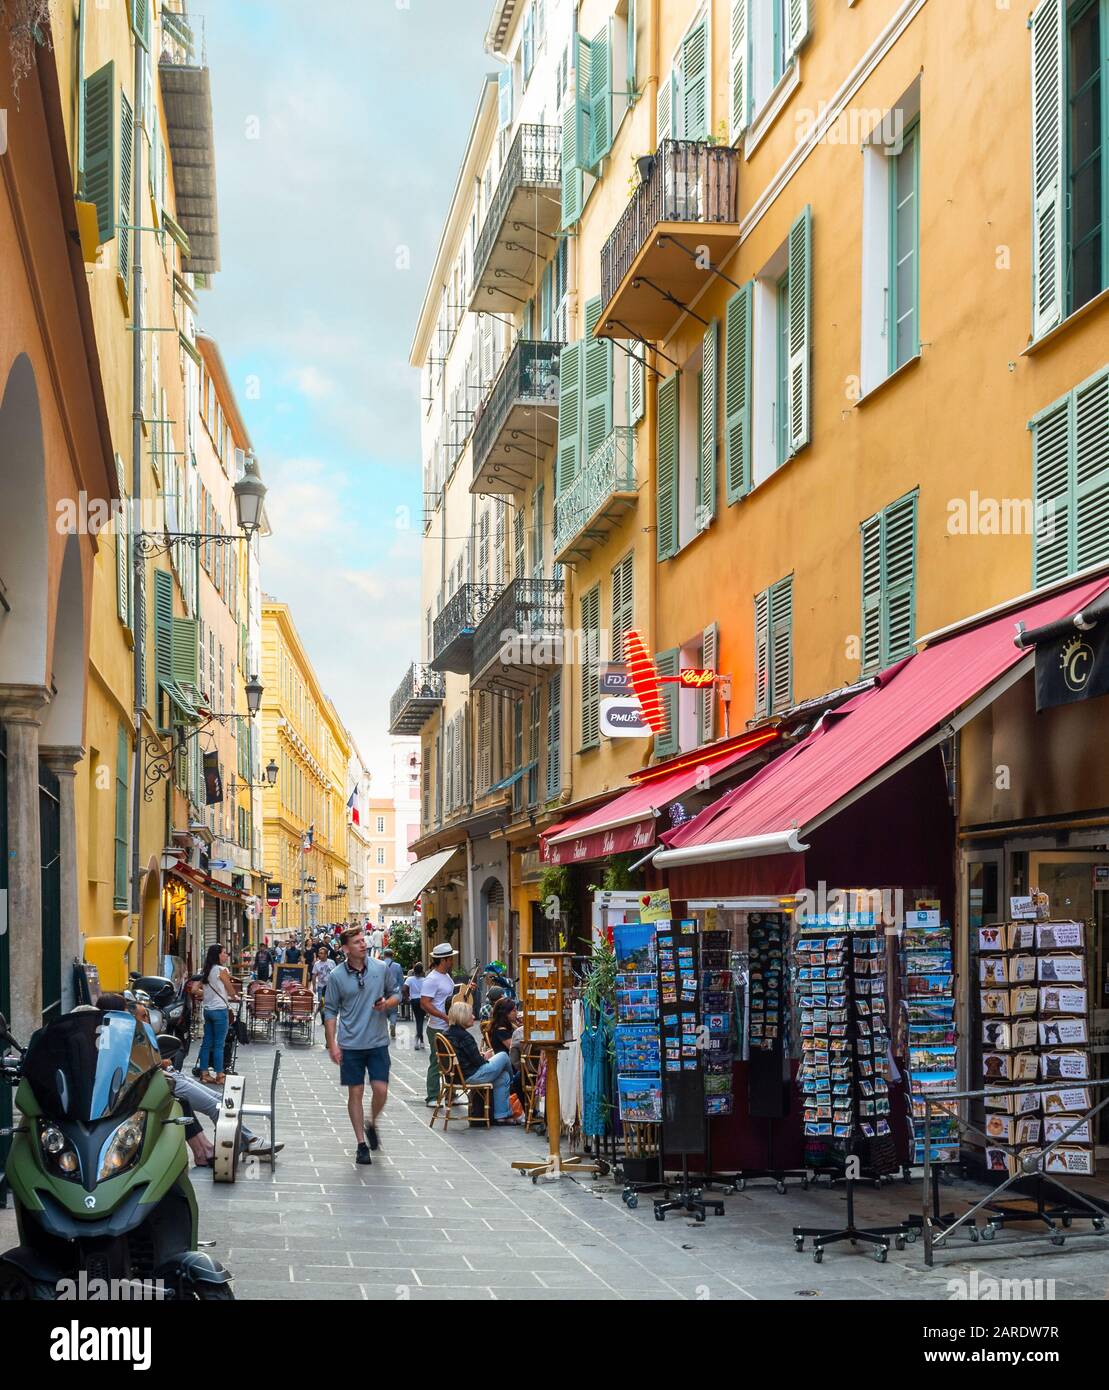 Los turistas compran y cenan en uno de los muchos callejones estrechos y calles en el casco antiguo Vieux Nice zona de la Riviera Francesa. Foto de stock